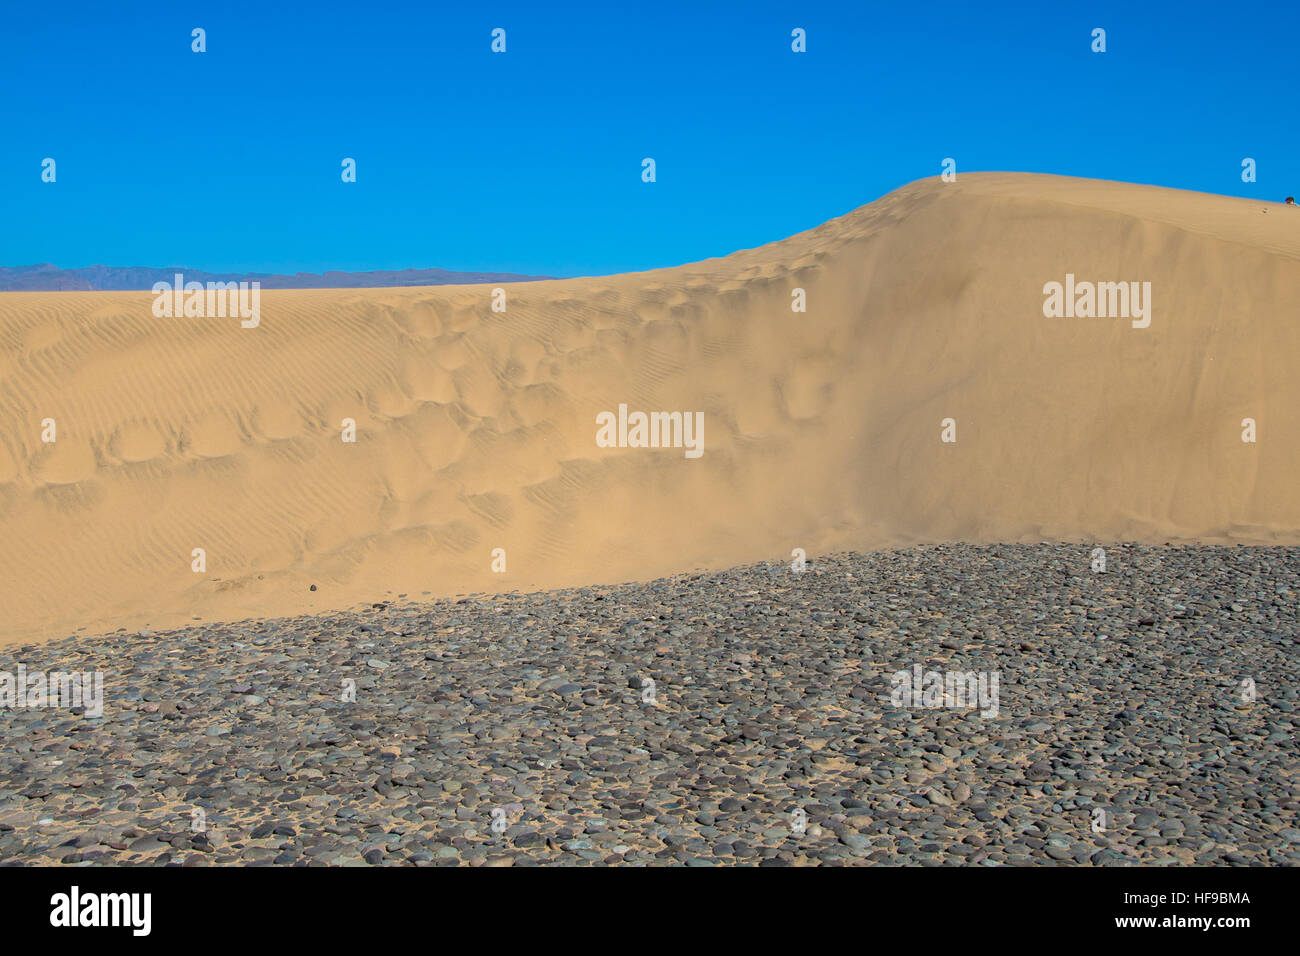 sand dunes at maspalomas at gran canaria in spain Stock Photo